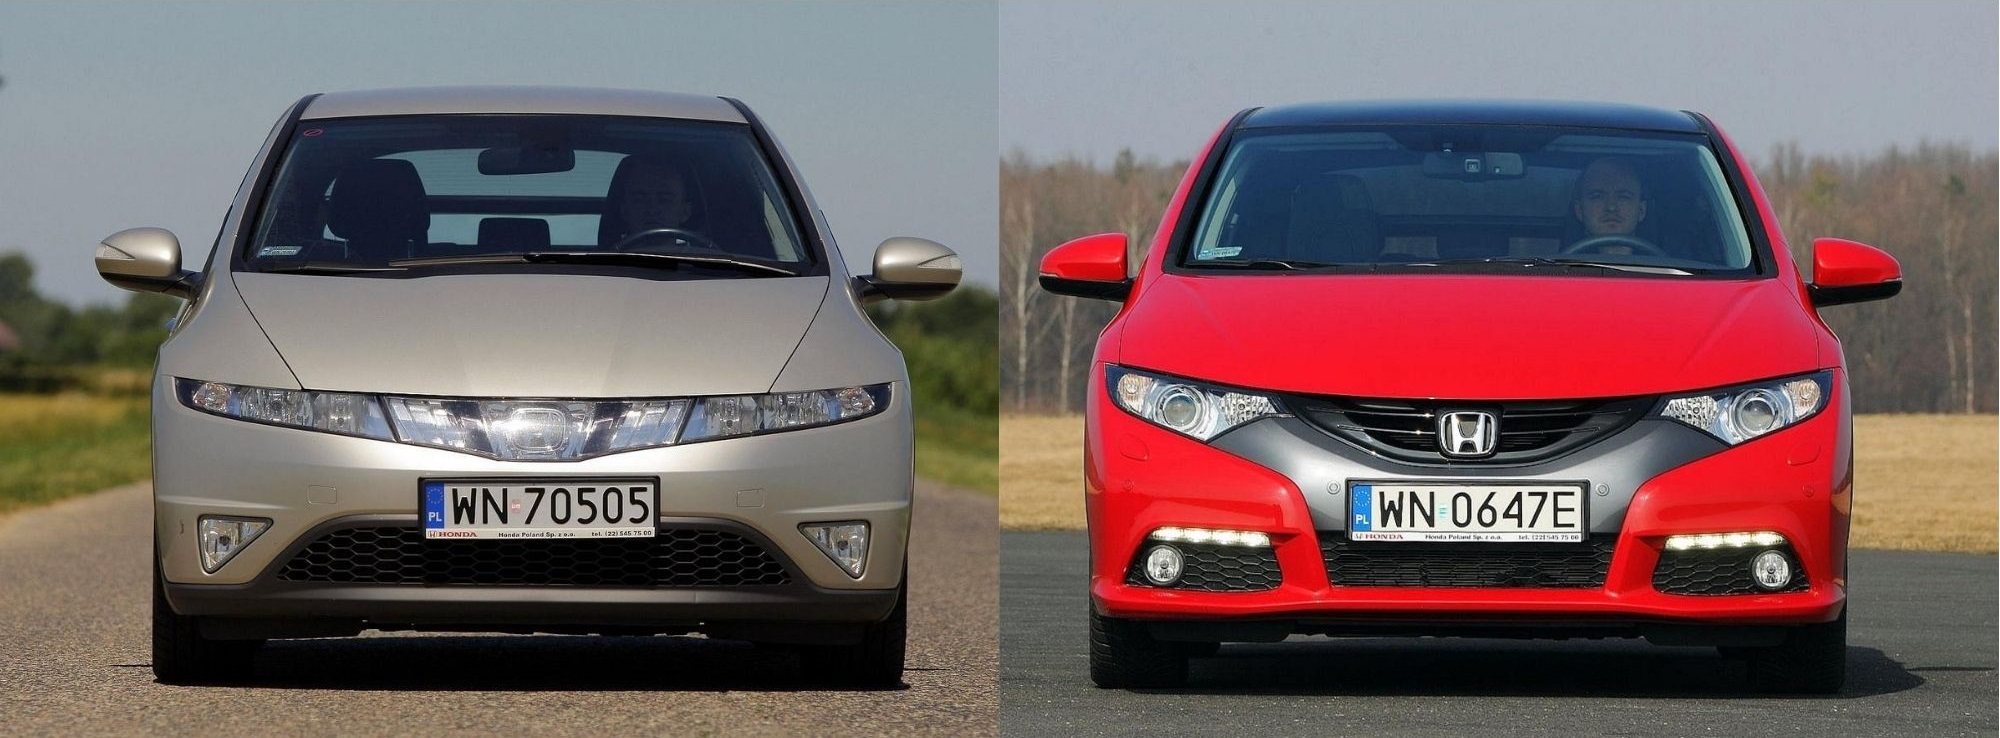 Używana Honda Civic Viii I Honda Civic Ix - Którą Generację Wybrać?